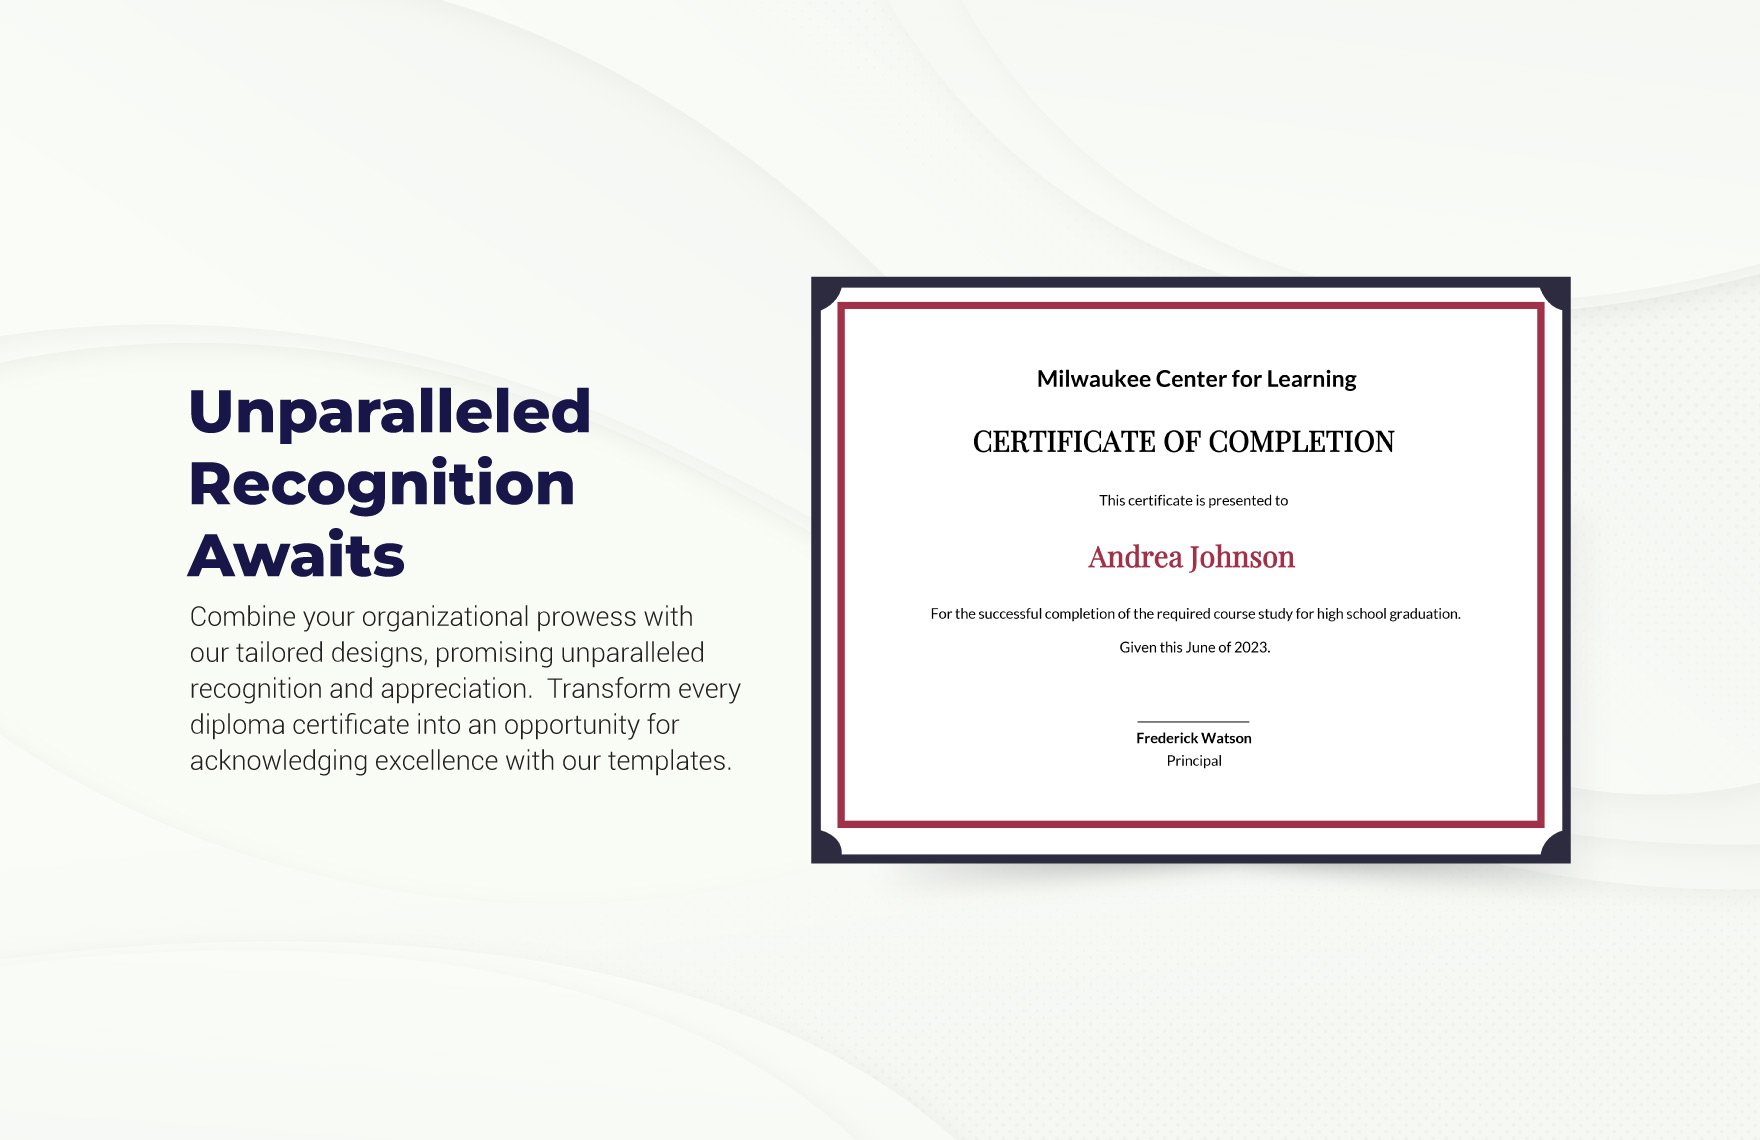 Editable School Certificate Template